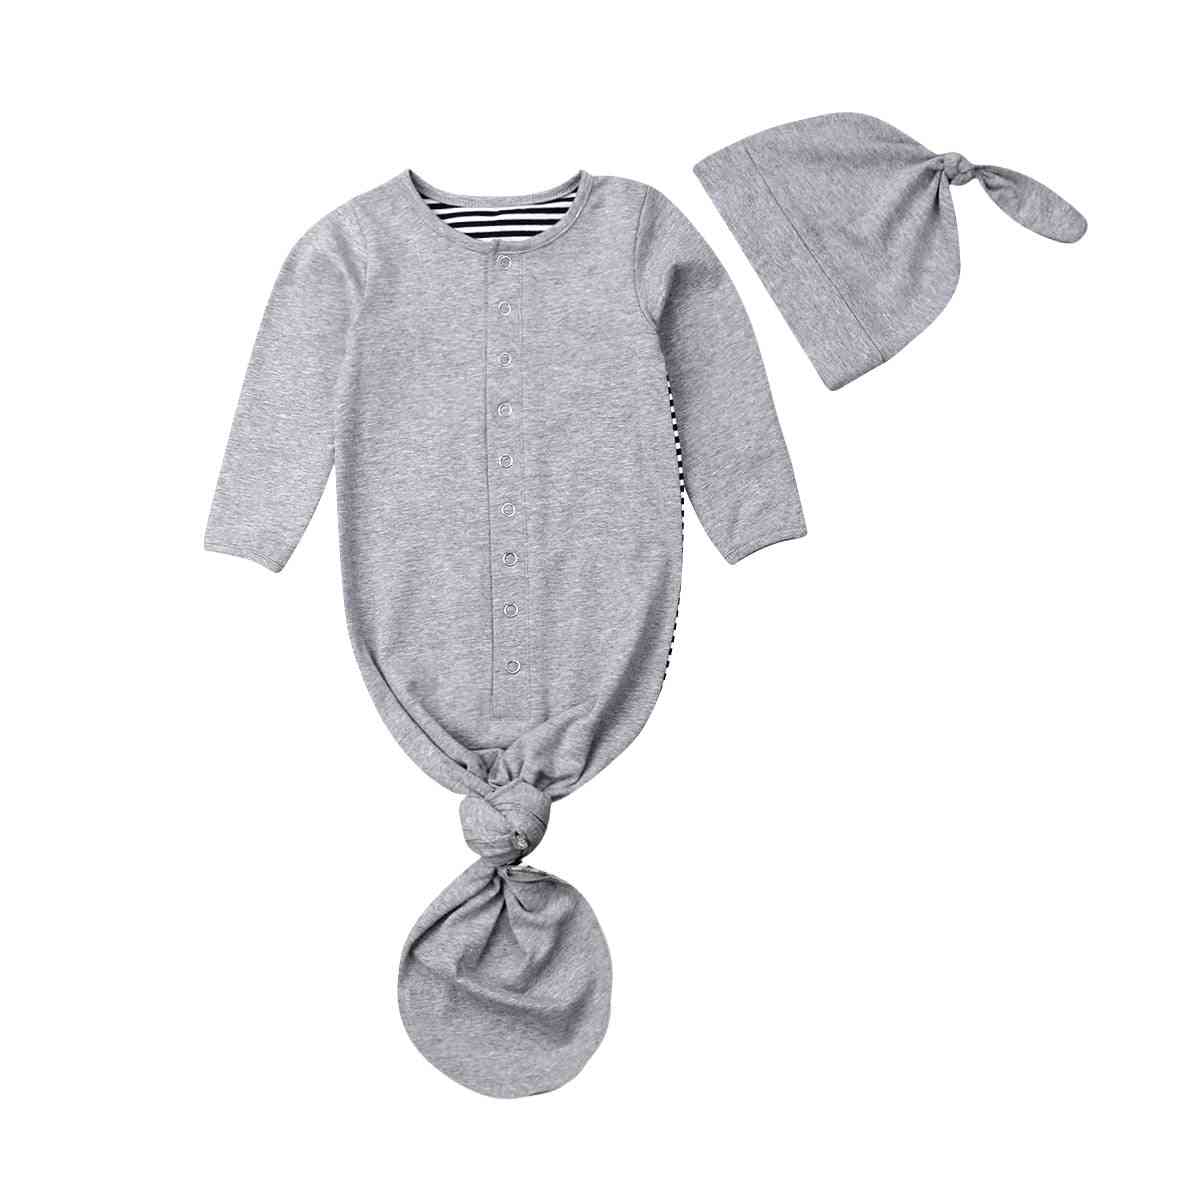 Bebê recém-nascido bebê infantil para meninas / meninos cobertor, saco de dormir com saco de dormir - cobertor de algodão listrado